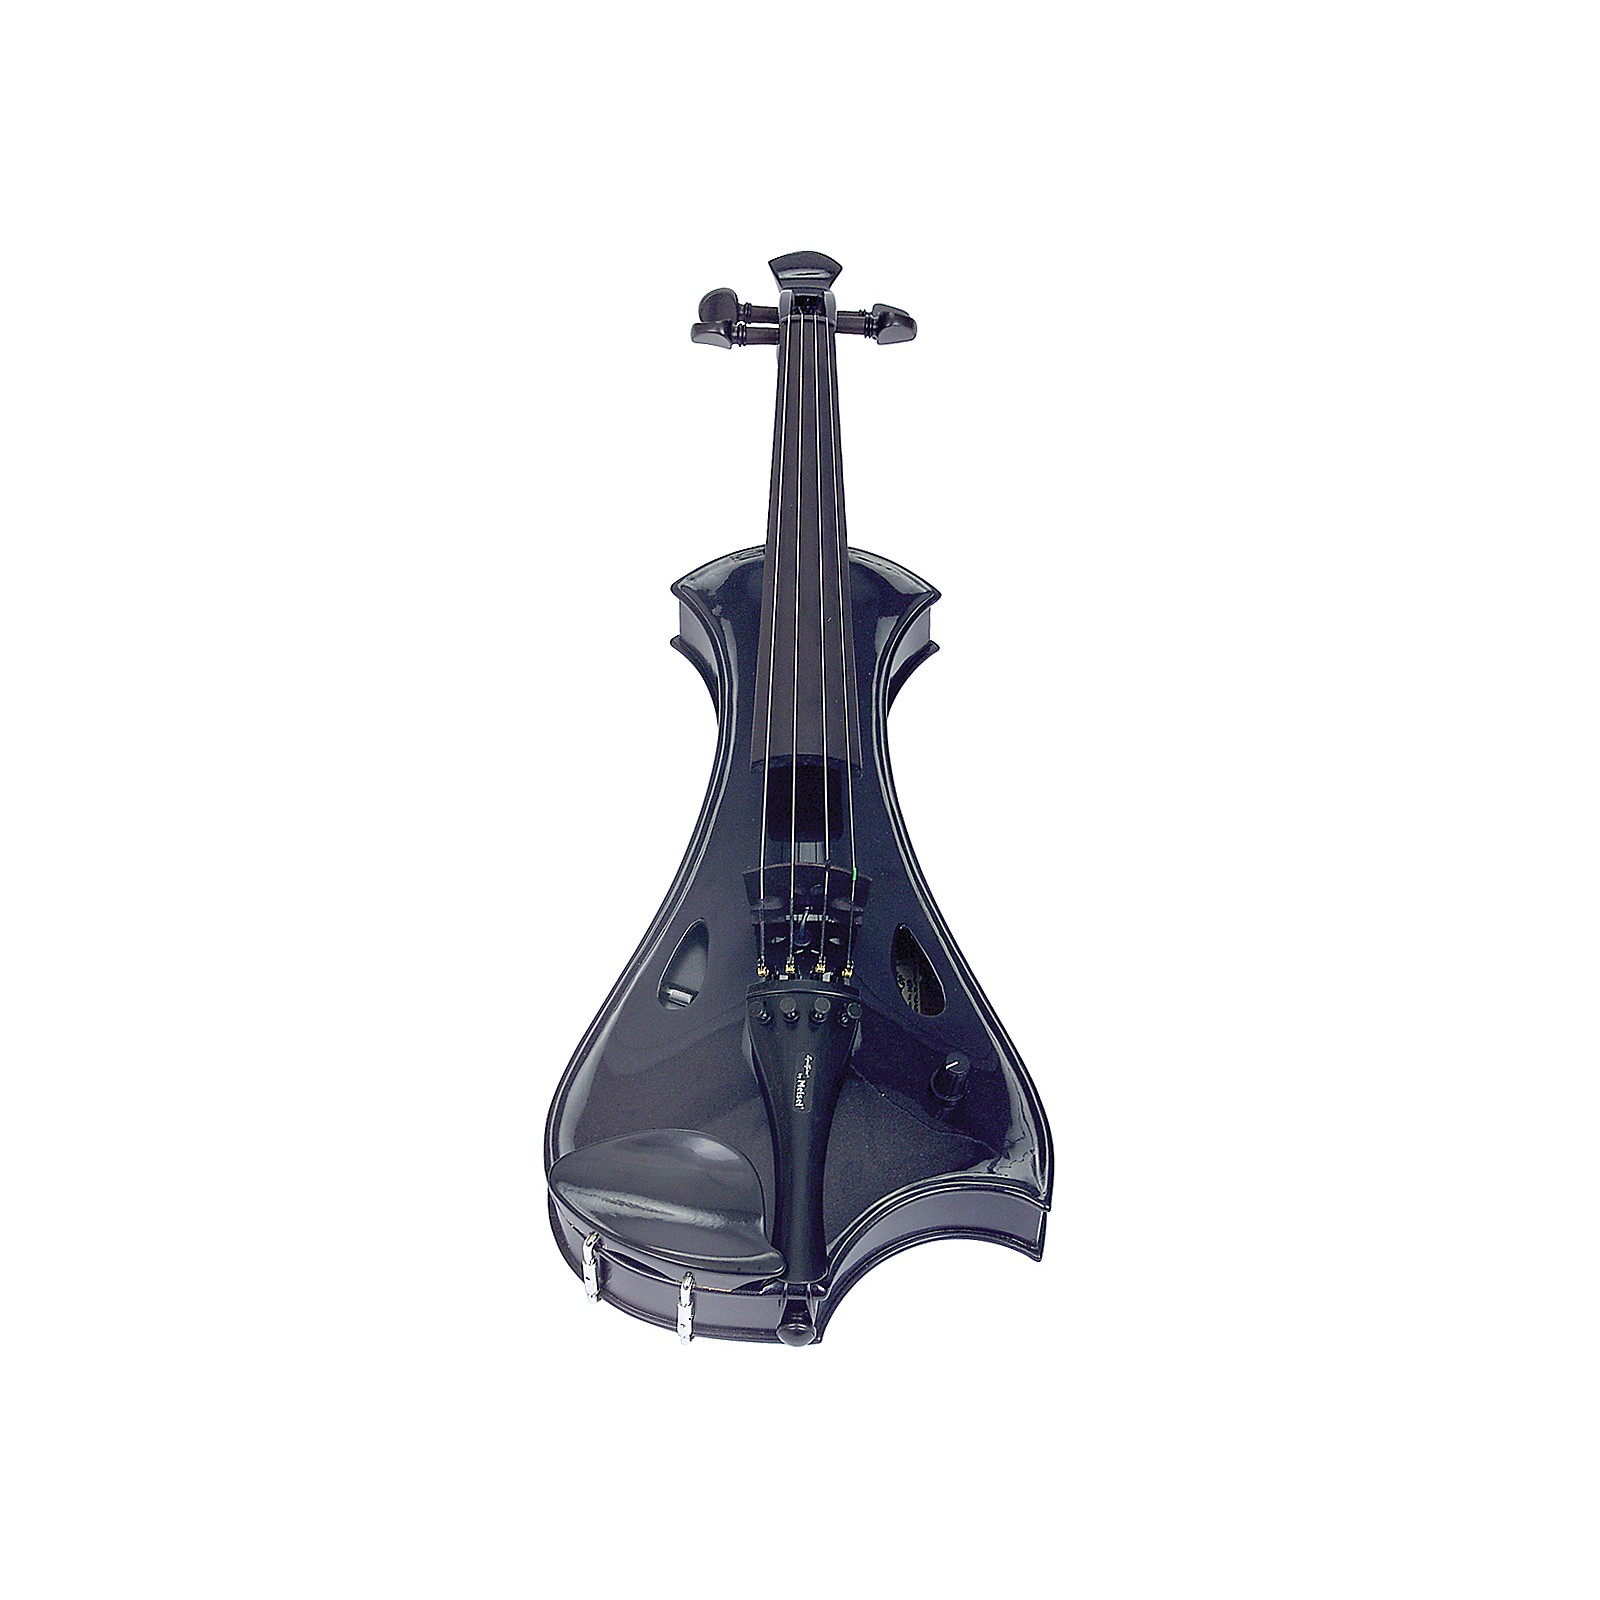 Antique Sunburst w/ Red Acoustic Violin Meisel Spitfire Electric Violin Electric Violin & Acoustic Violin 2 Pack 